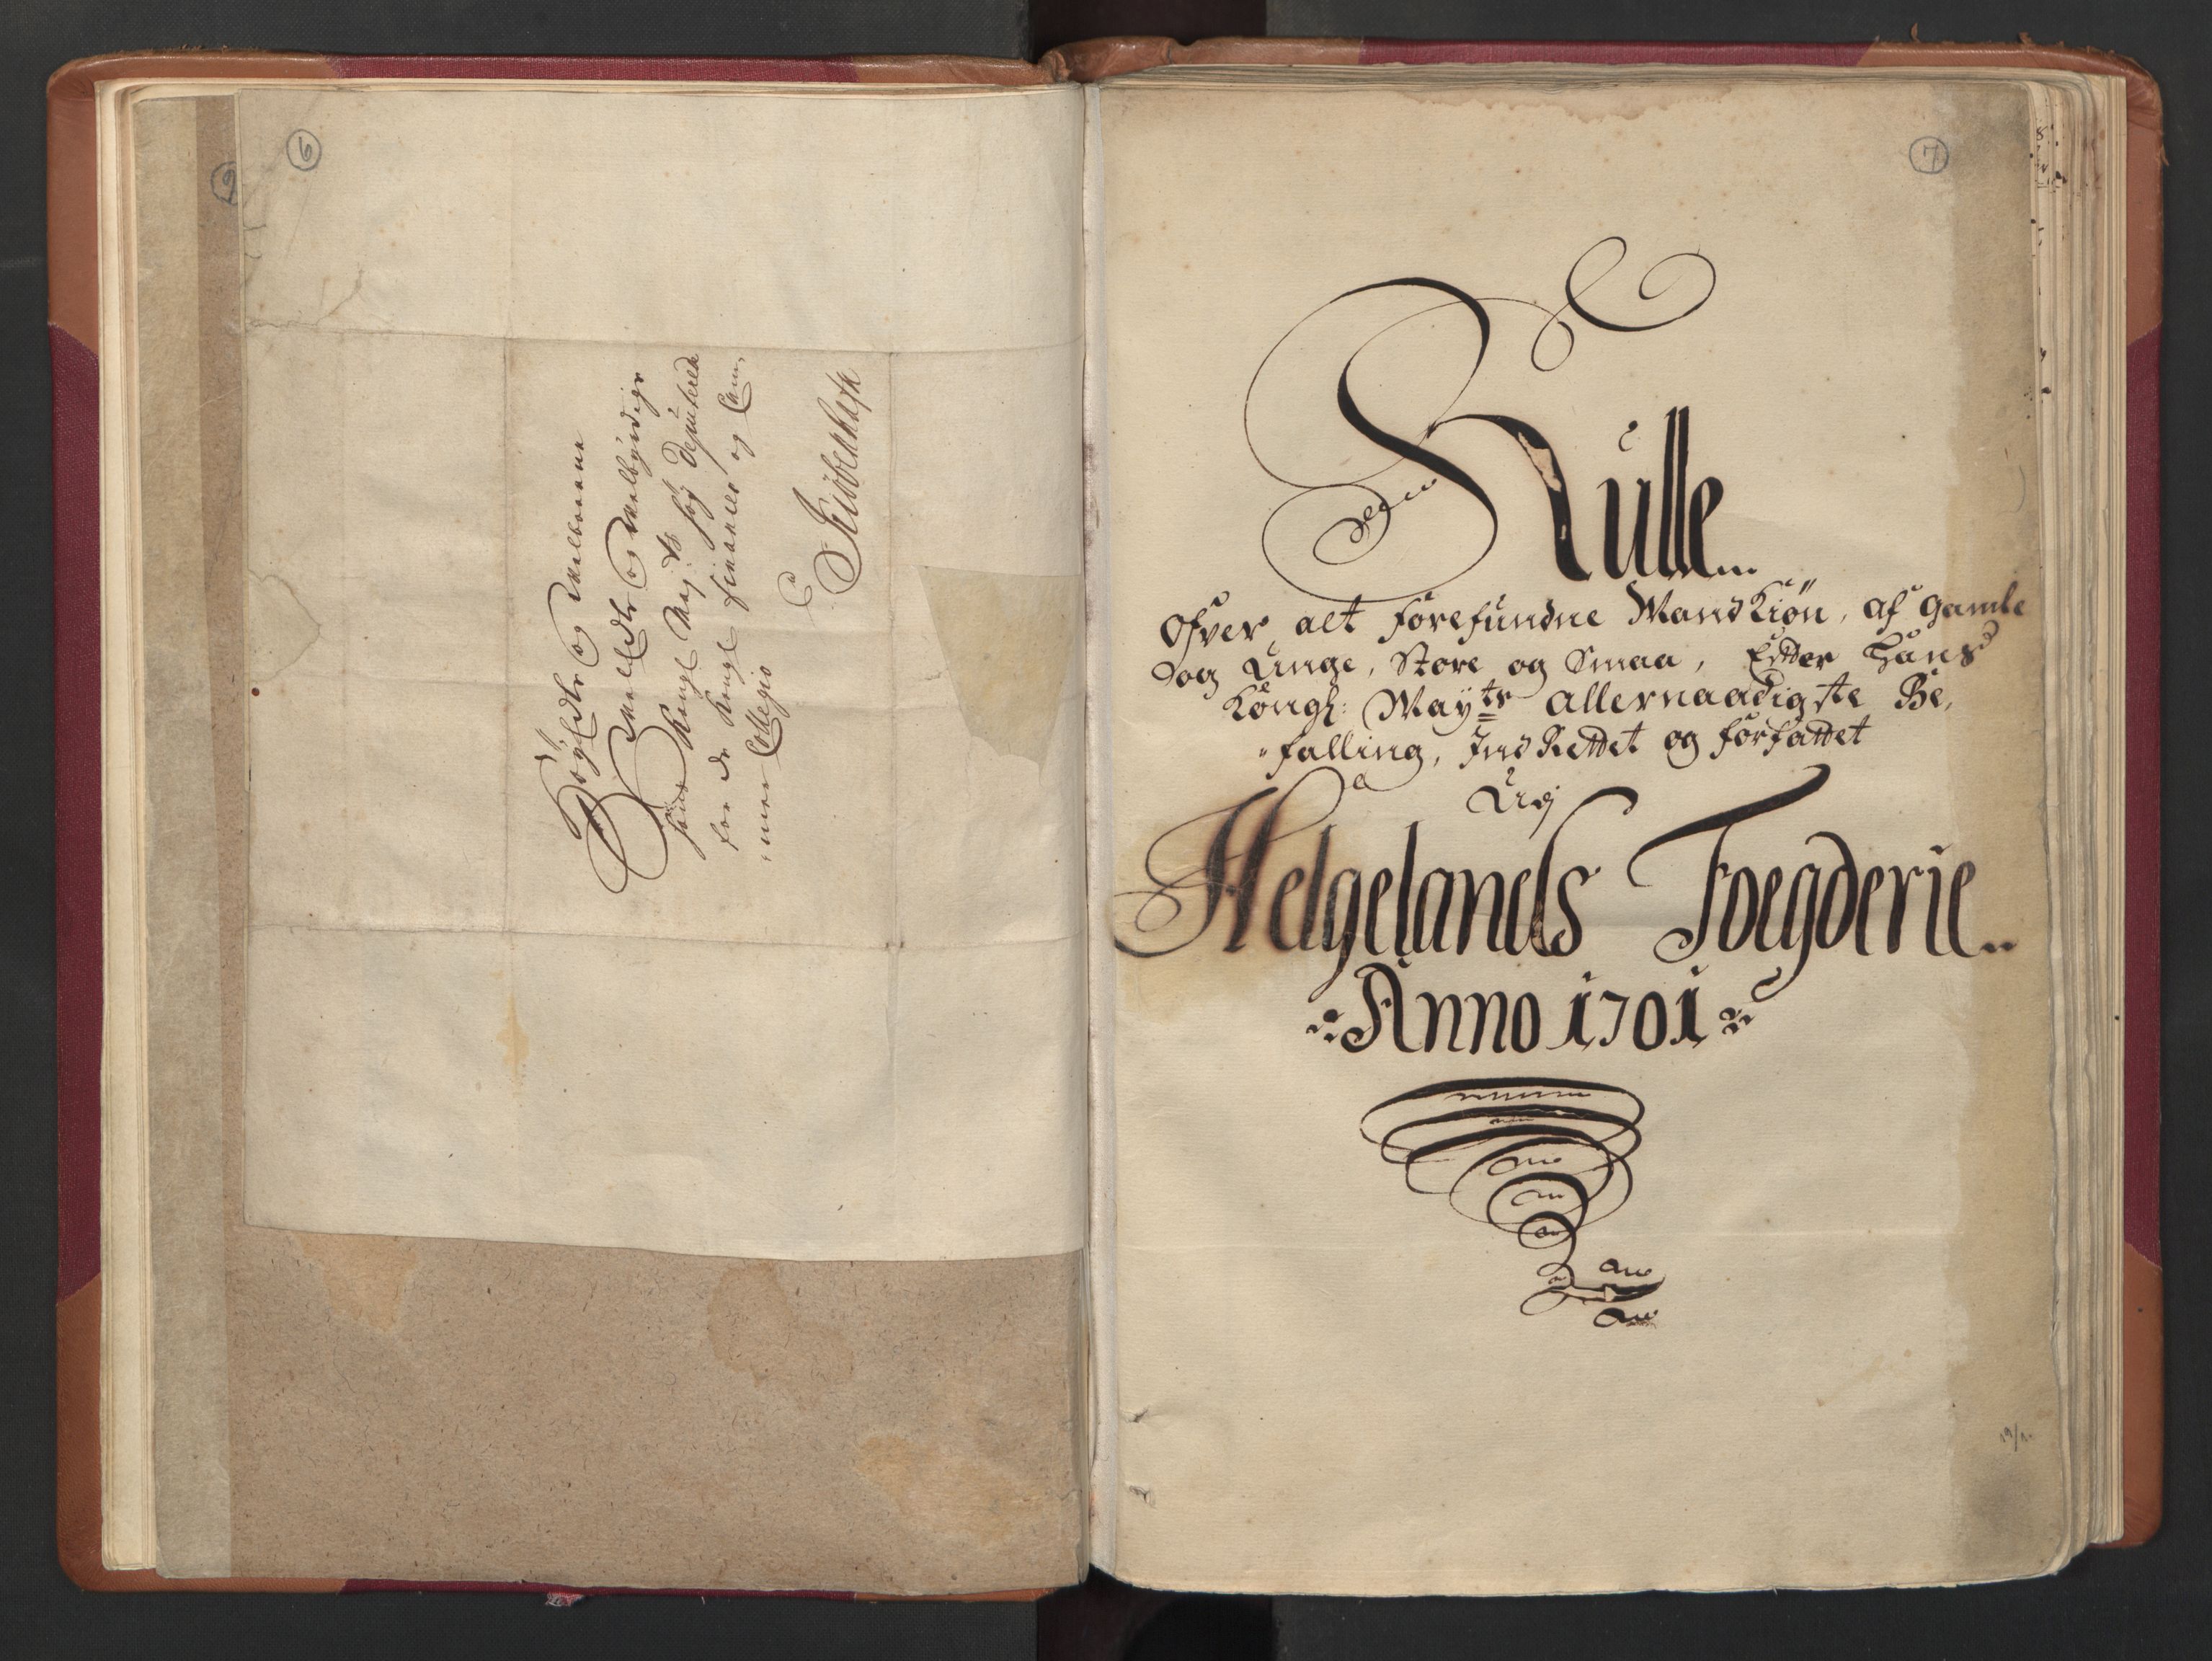 RA, Manntallet 1701, nr. 16: Helgeland fogderi, 1701, s. 6-7